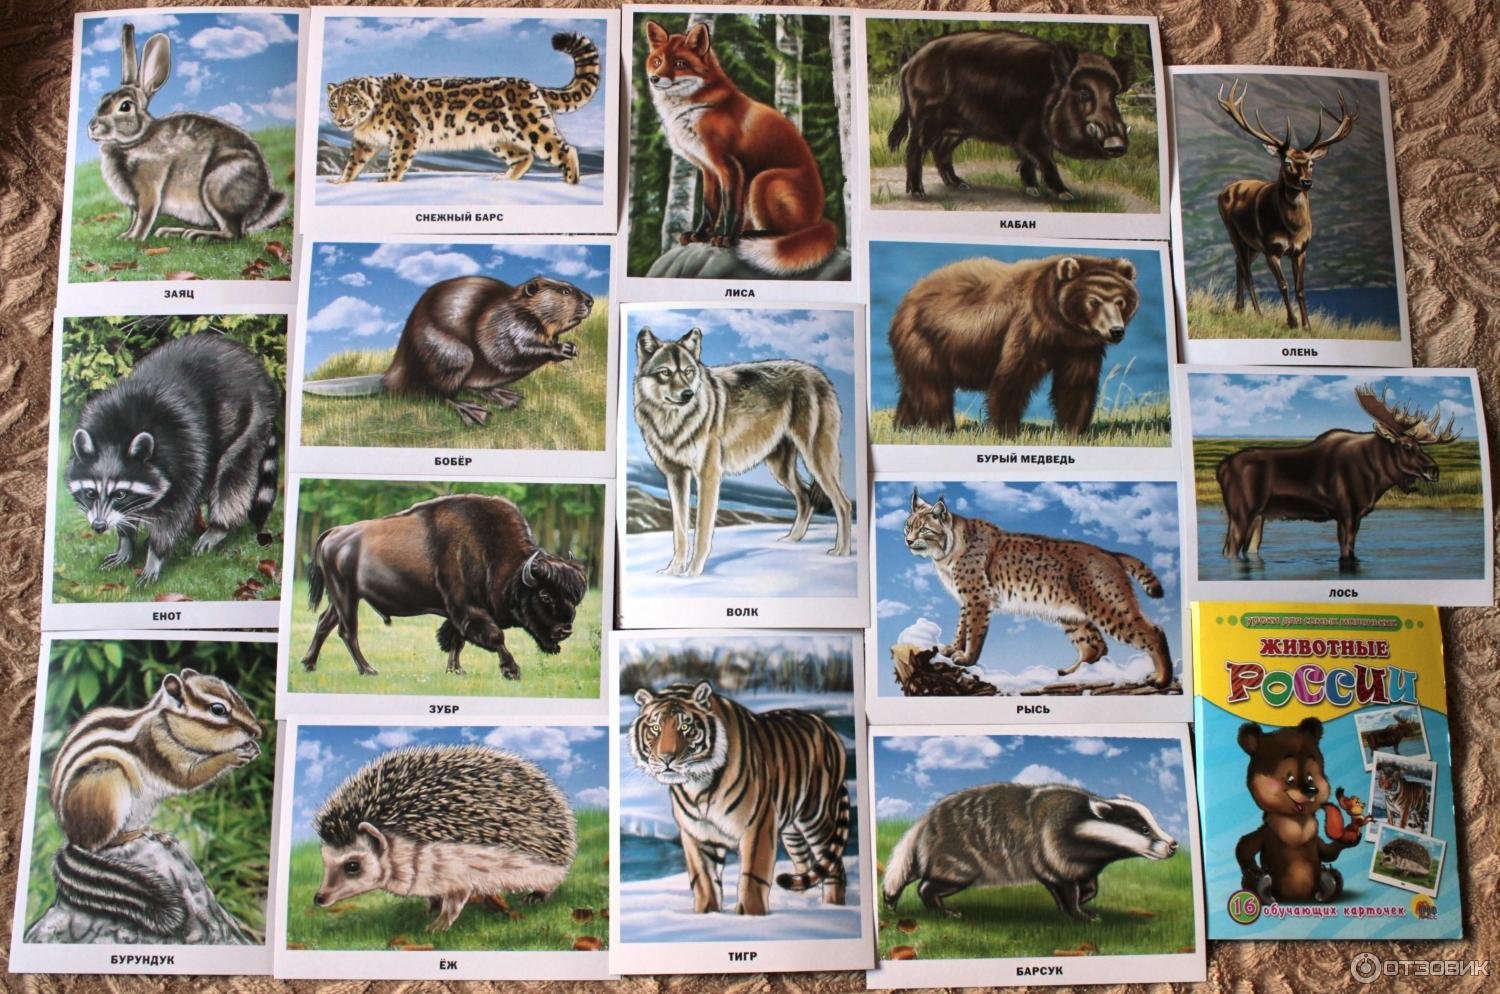 Плакат. Животные. Плакат "Дикие животные". Животные России для детей. Карточки. Животные Африки. Обитатели северной америки